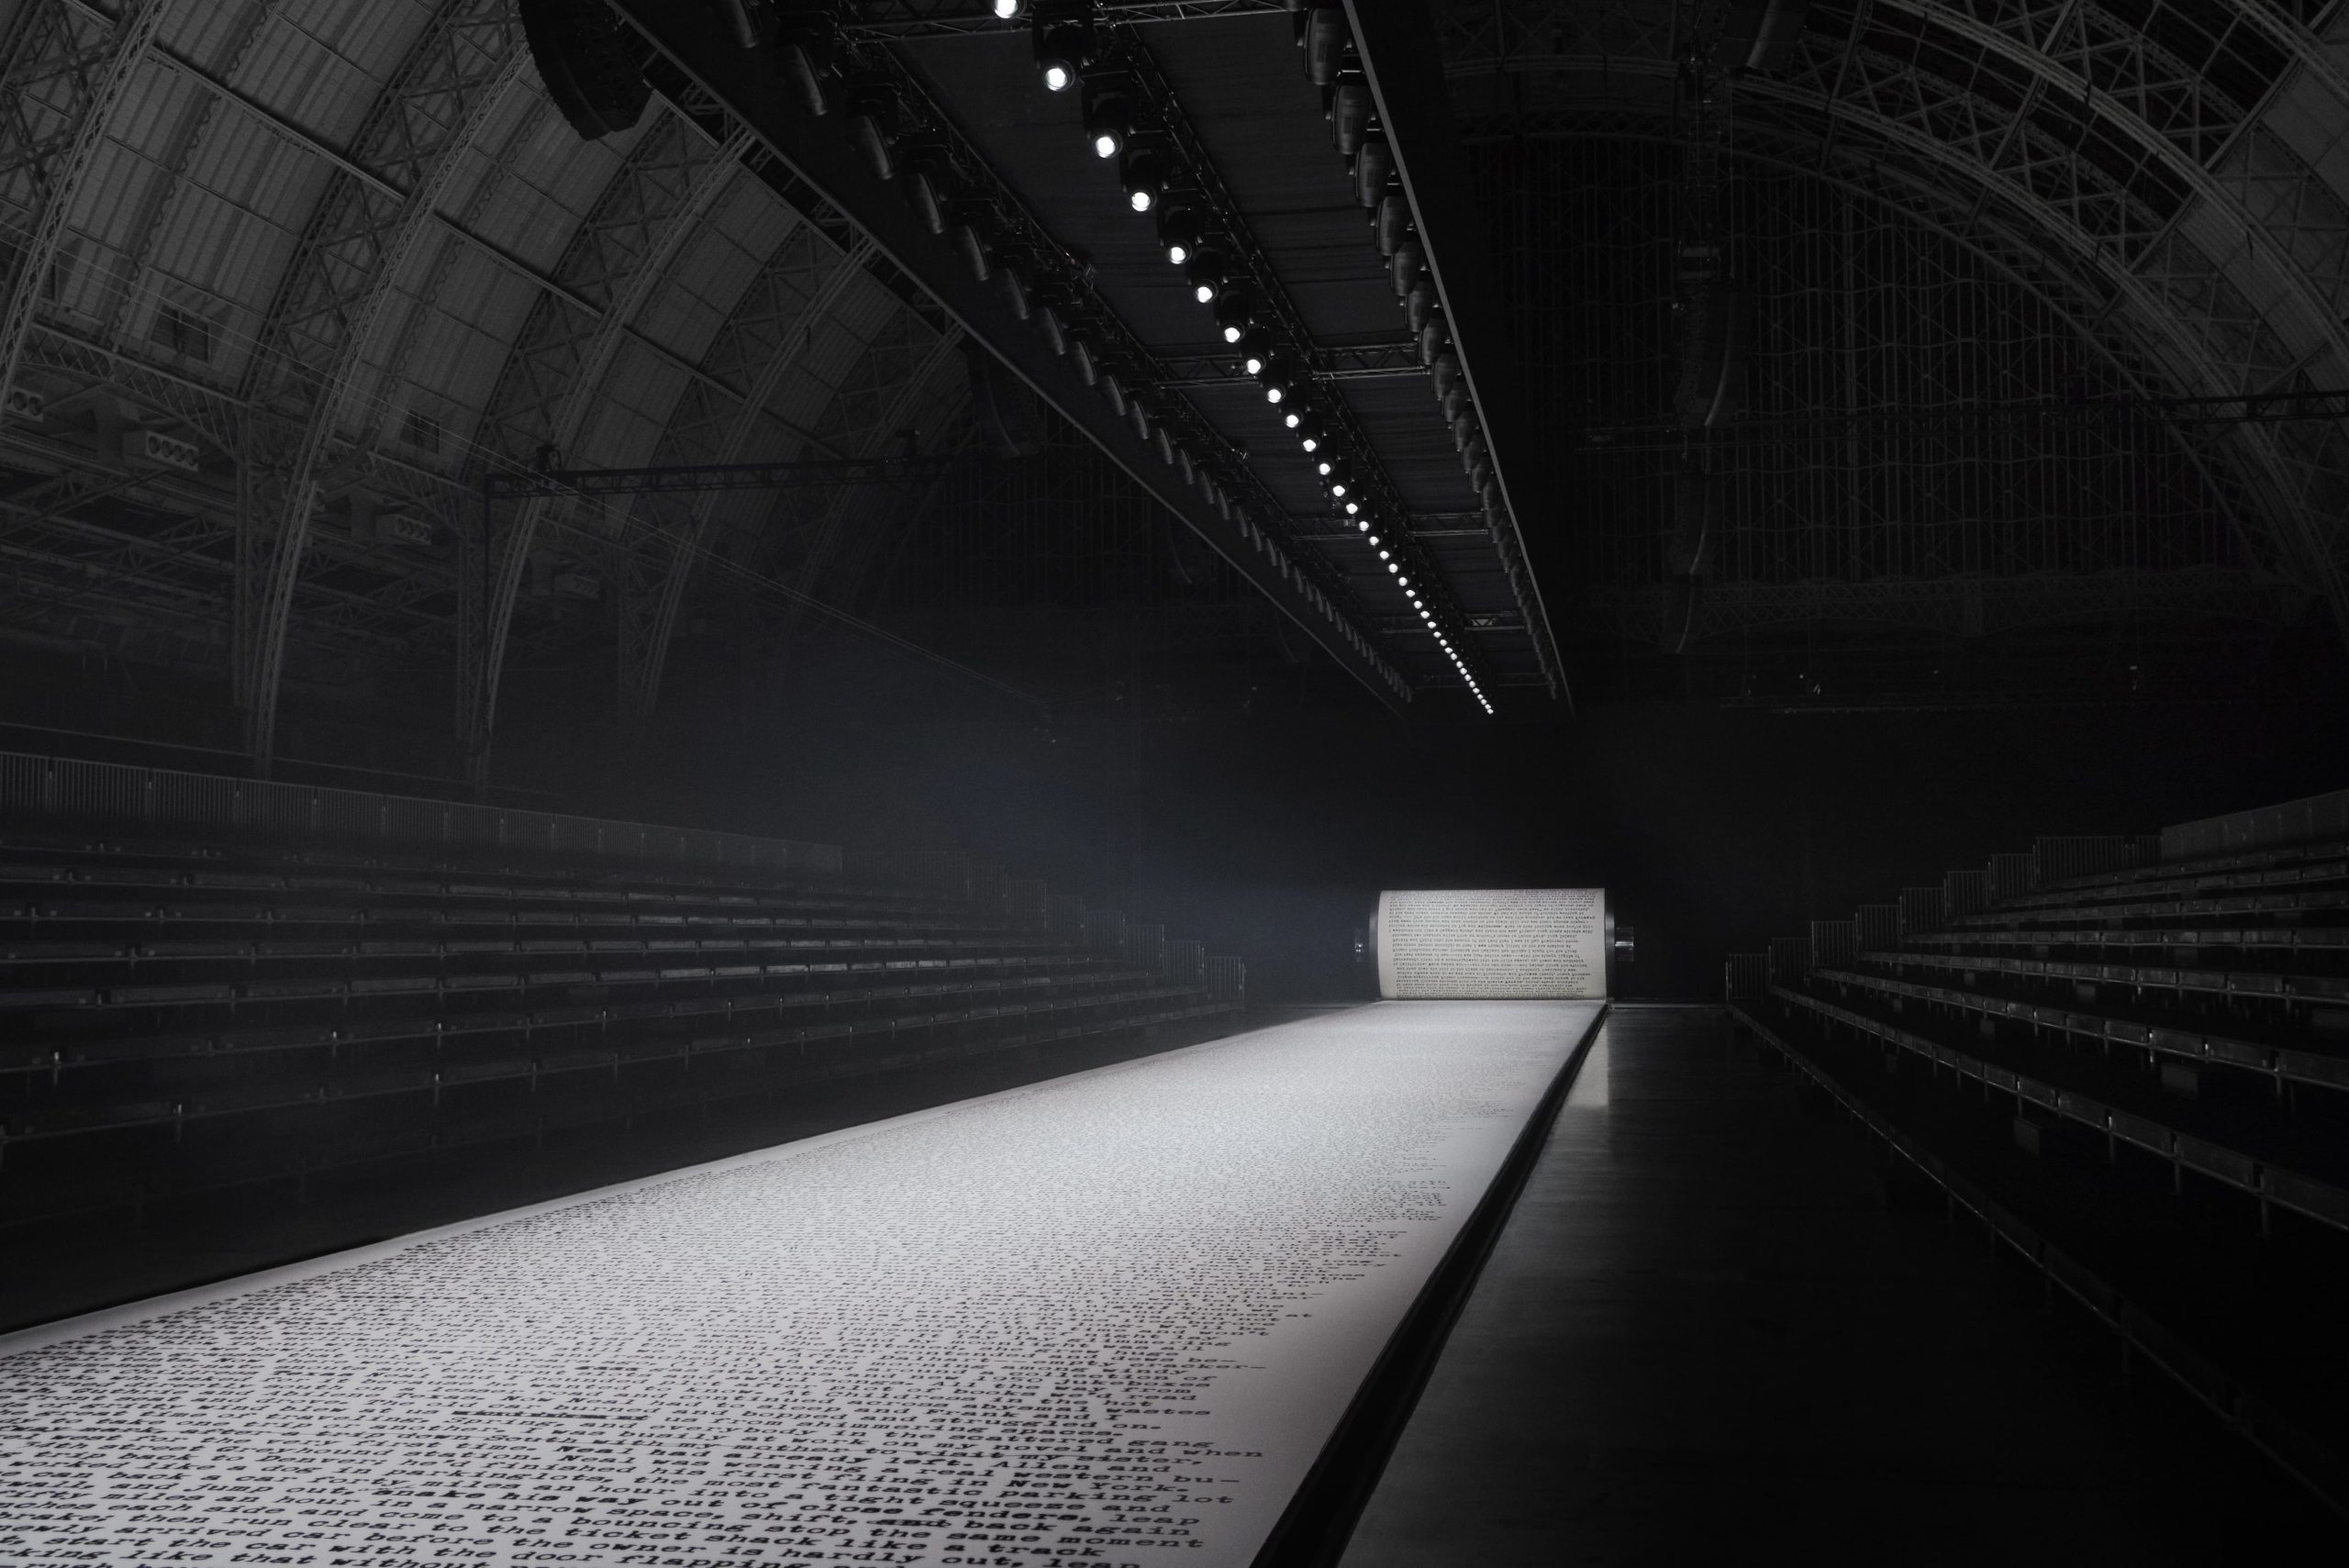 Dior Men's Pre-Fall 2022 Fashion Show Set Design